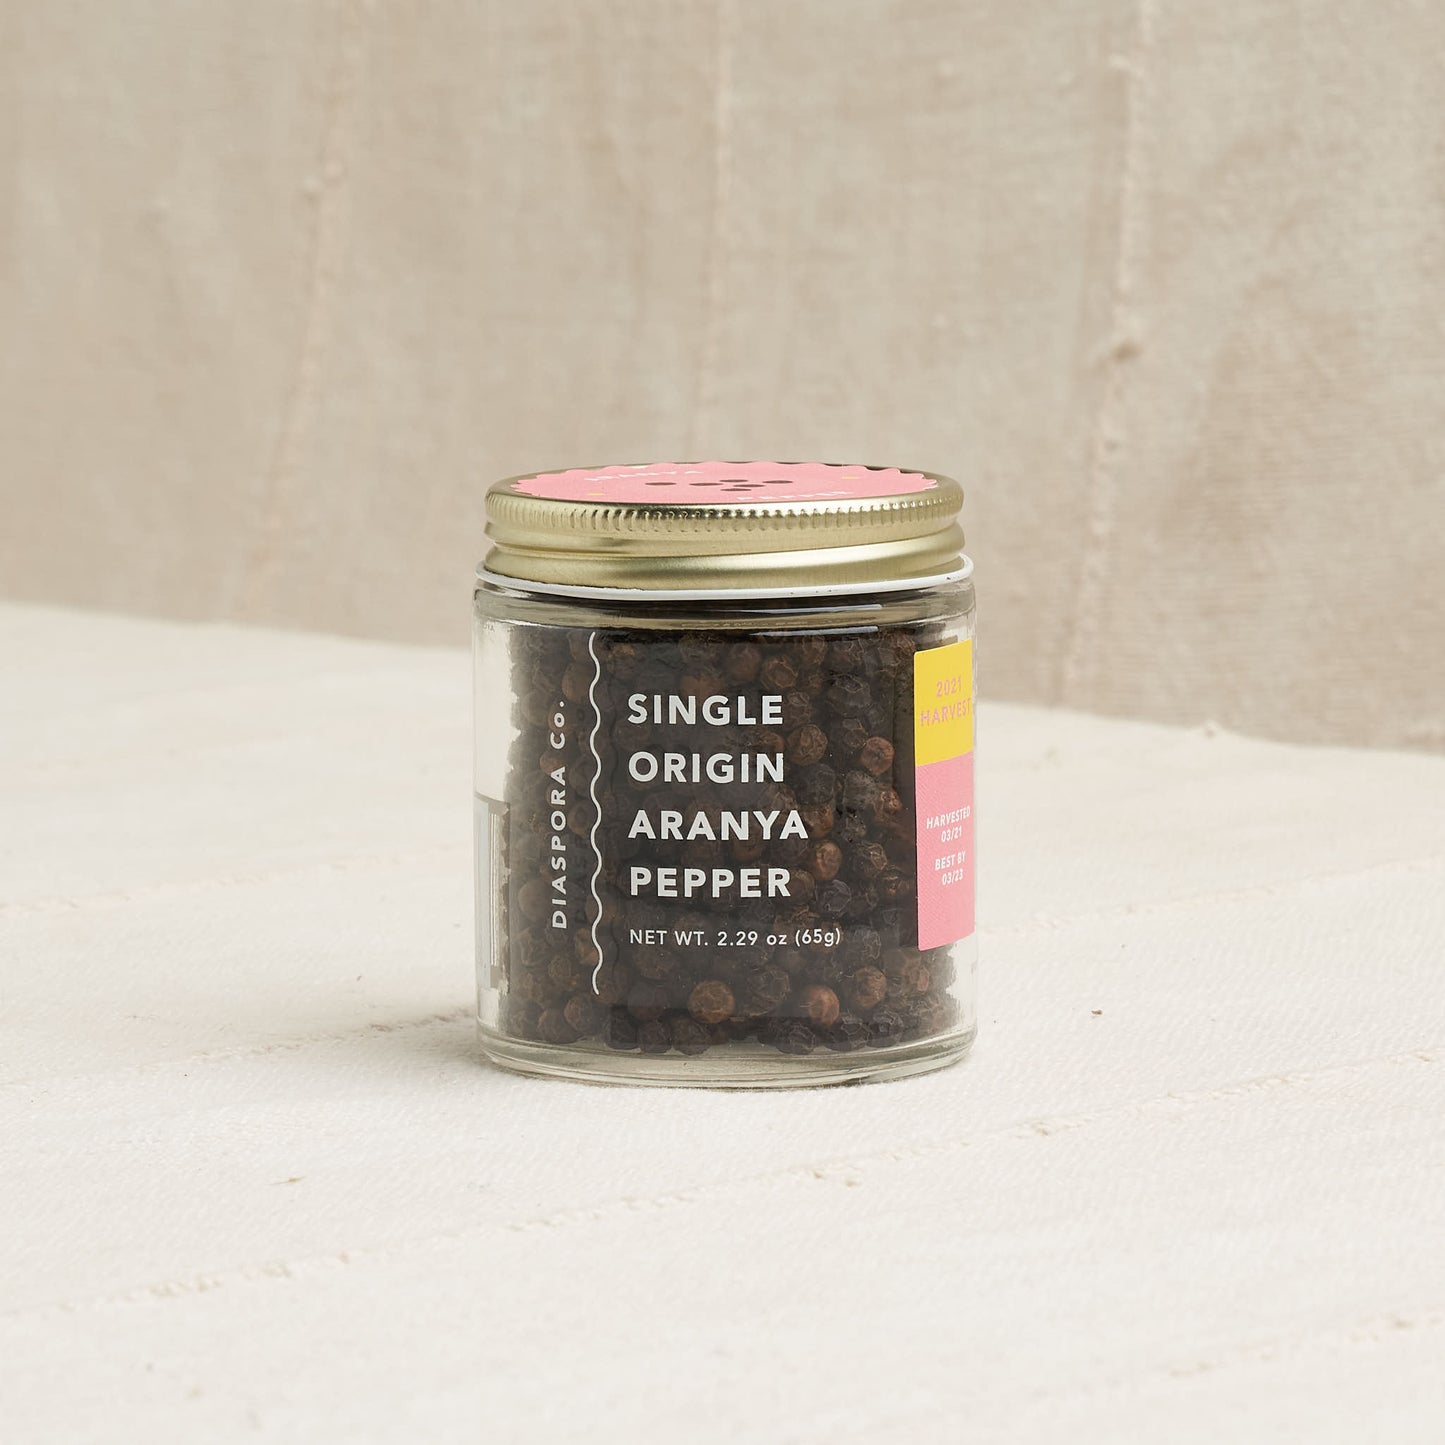 Single Origin Aranya Pepper